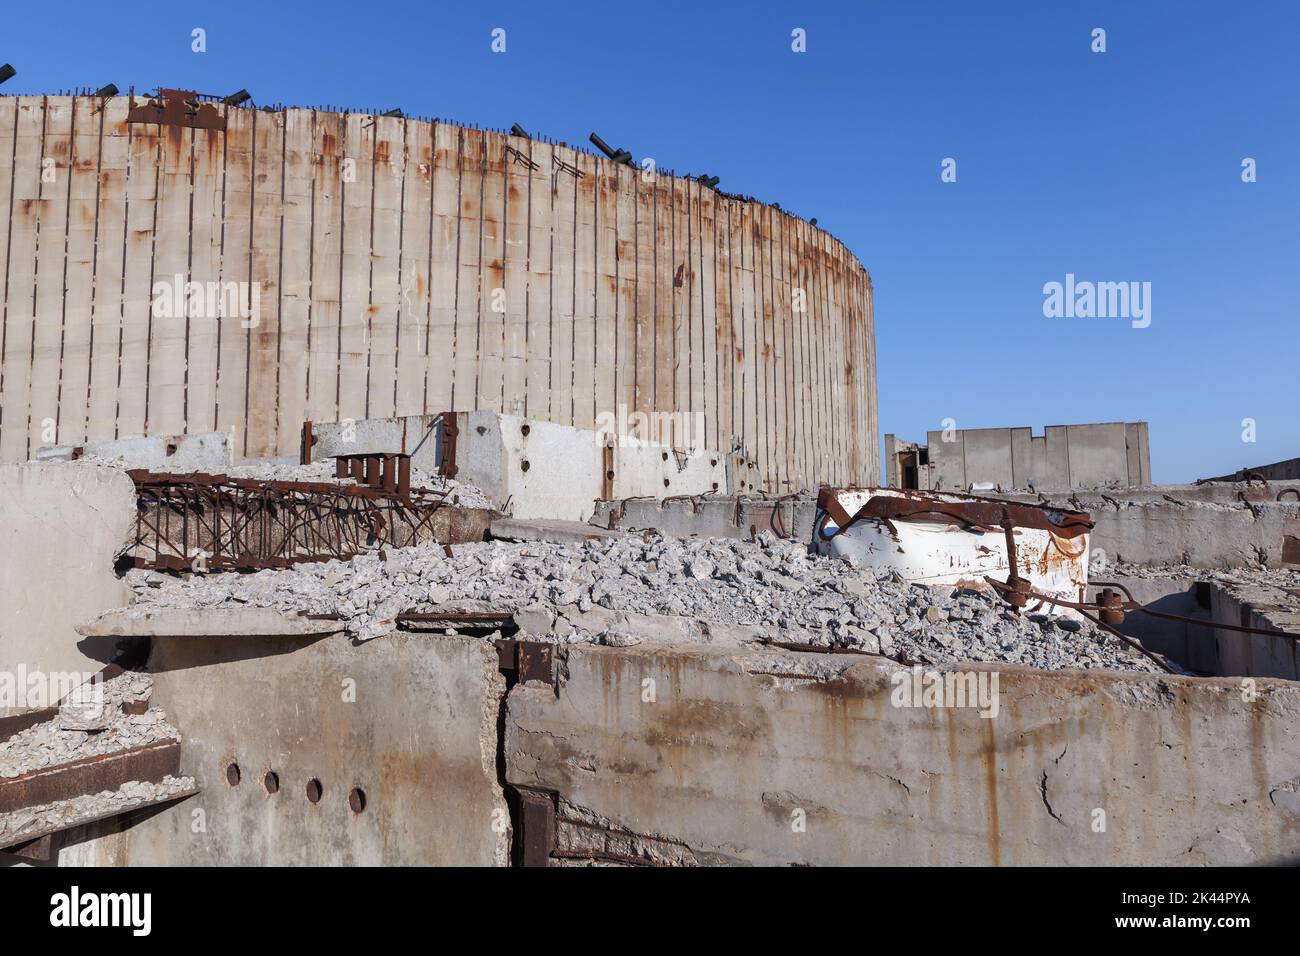 Esterno della stazione di energia atomica Crimea abbandonata, sul tetto del reattore nucleare incompiuto in una giornata di sole. Capo Kazantip, Crimea Foto Stock